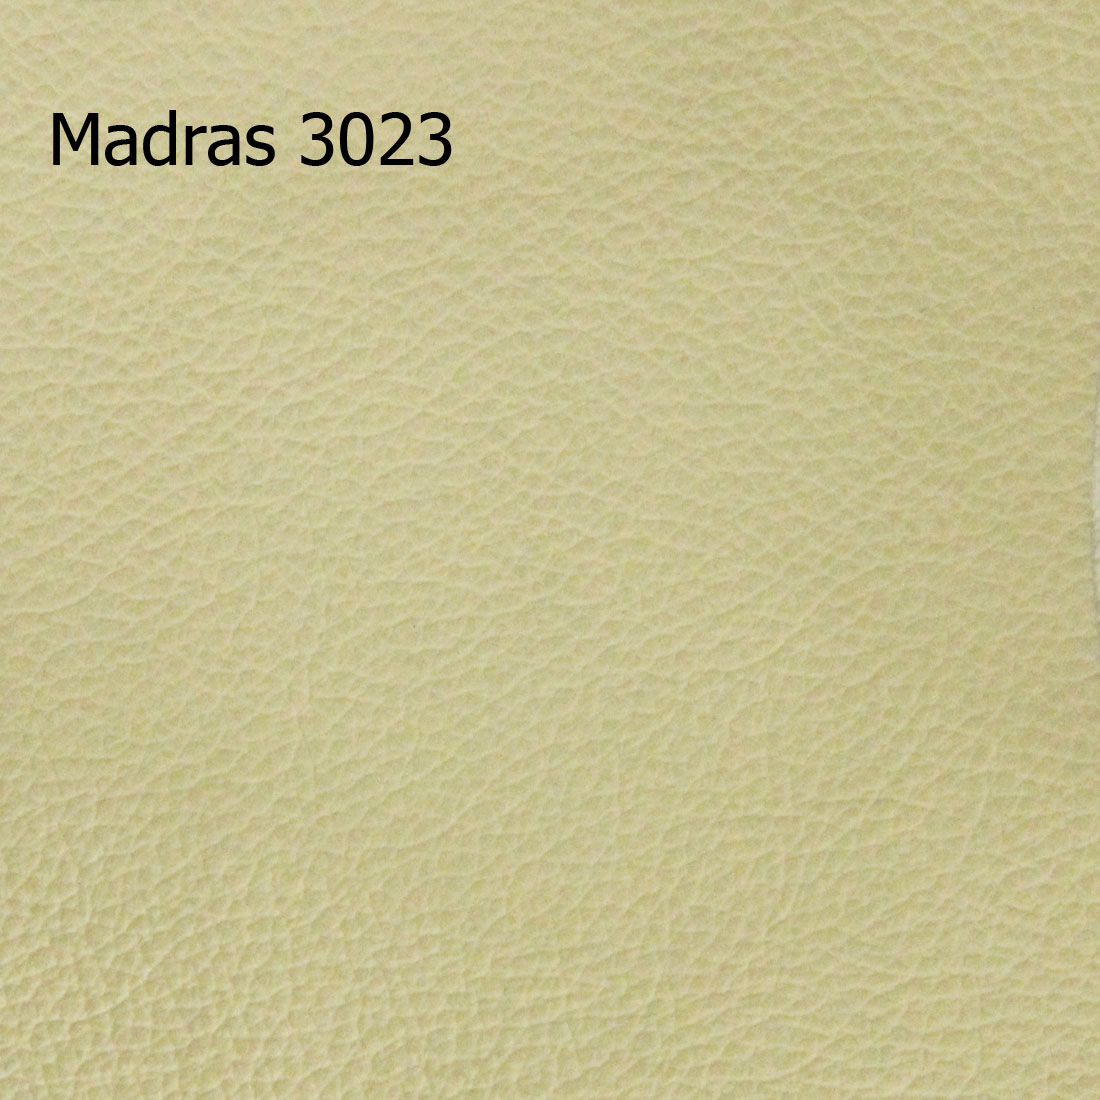 Madras 3023